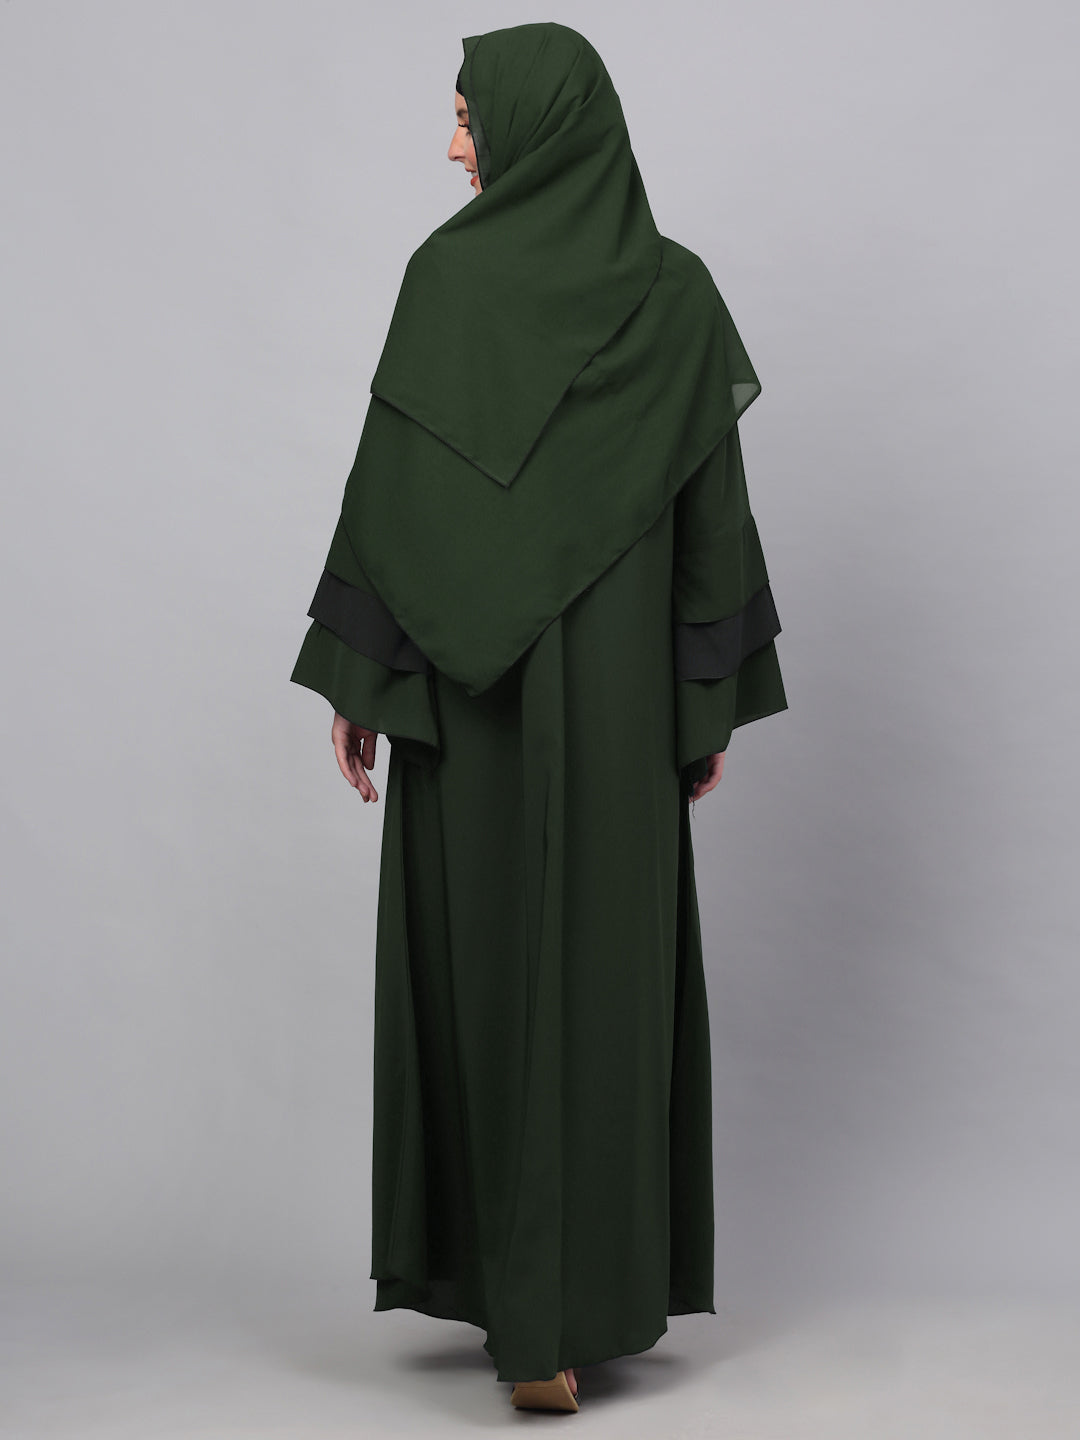 Klotthe Women Olive Embellished Burqa With Scarves